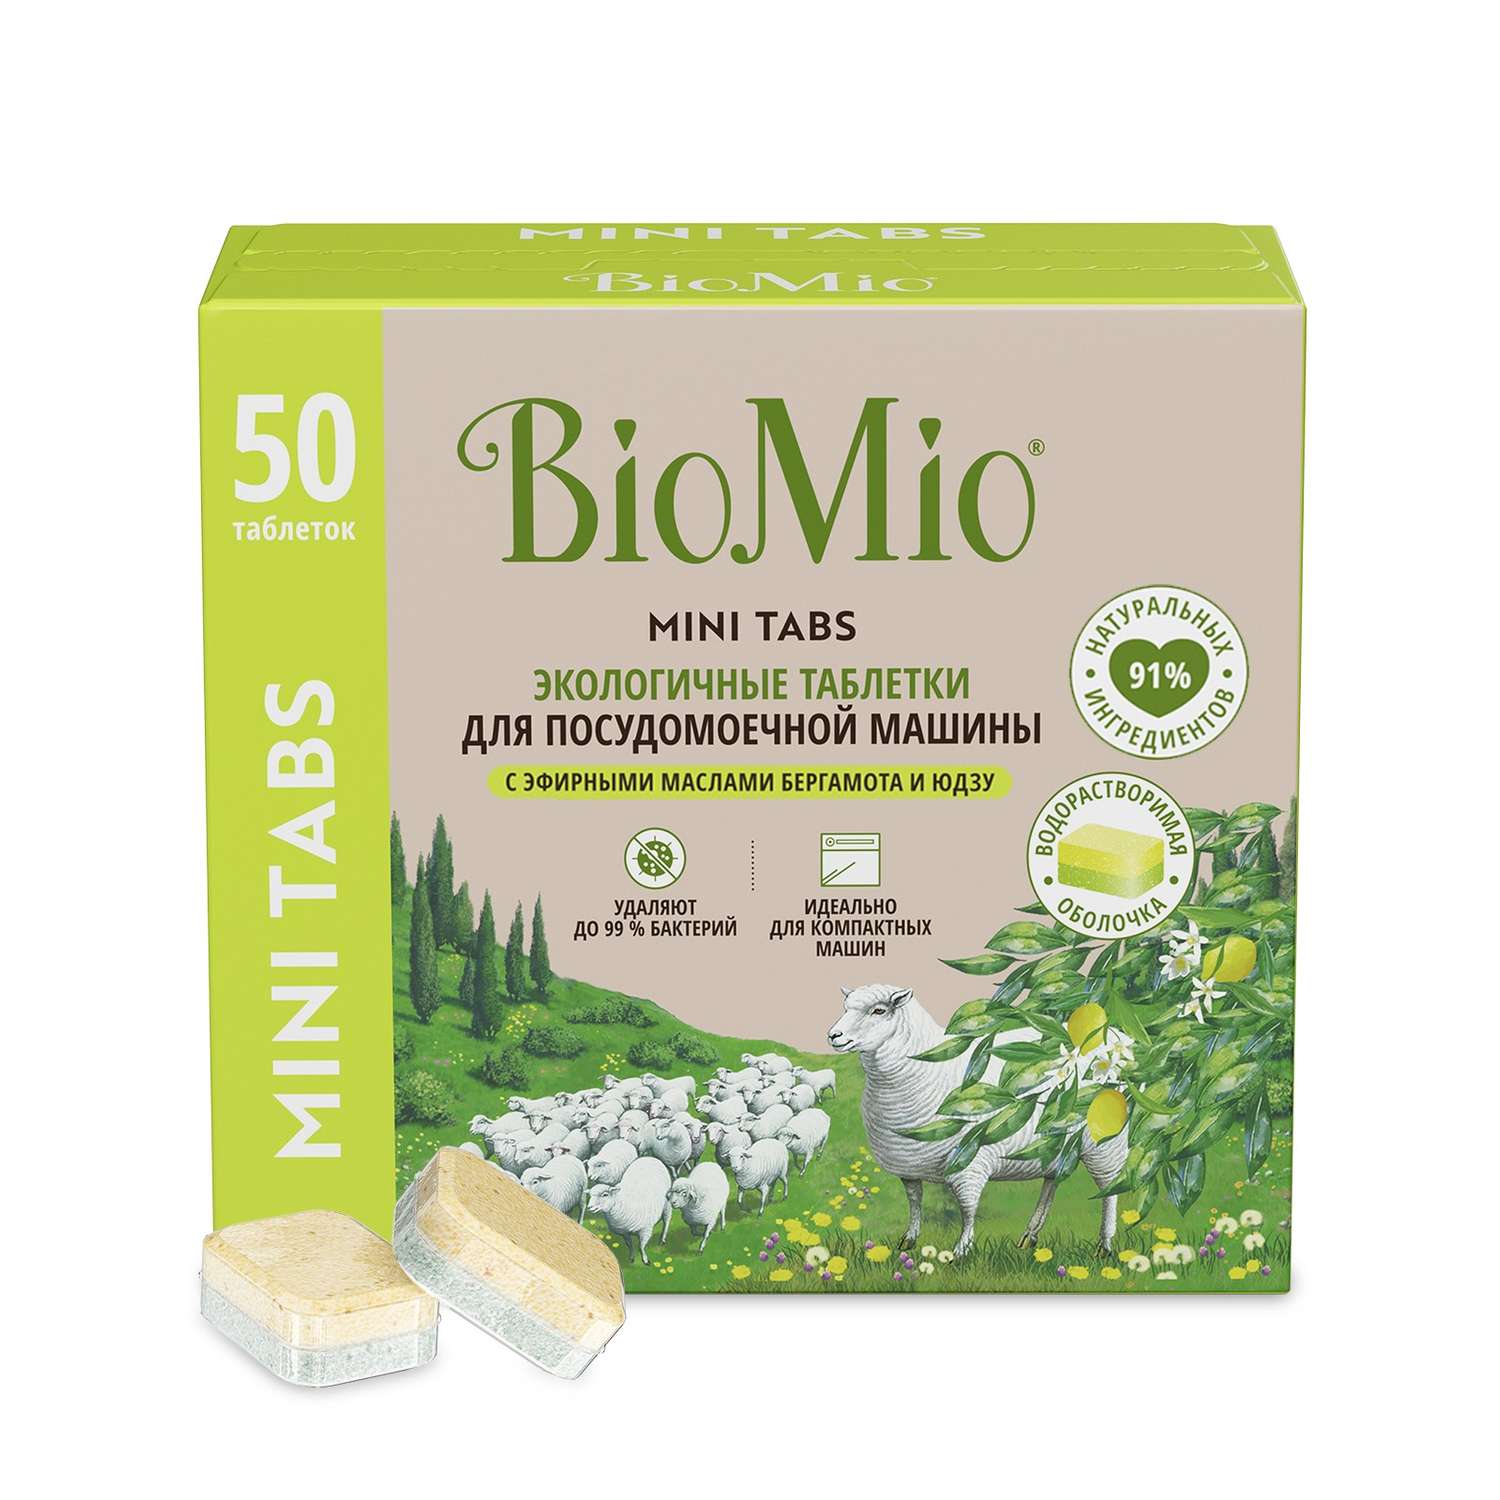 Таблетки для посудомоечной машины BioMio с эфирными маслами бергамота и юдзу 10г*50шт - фото 1